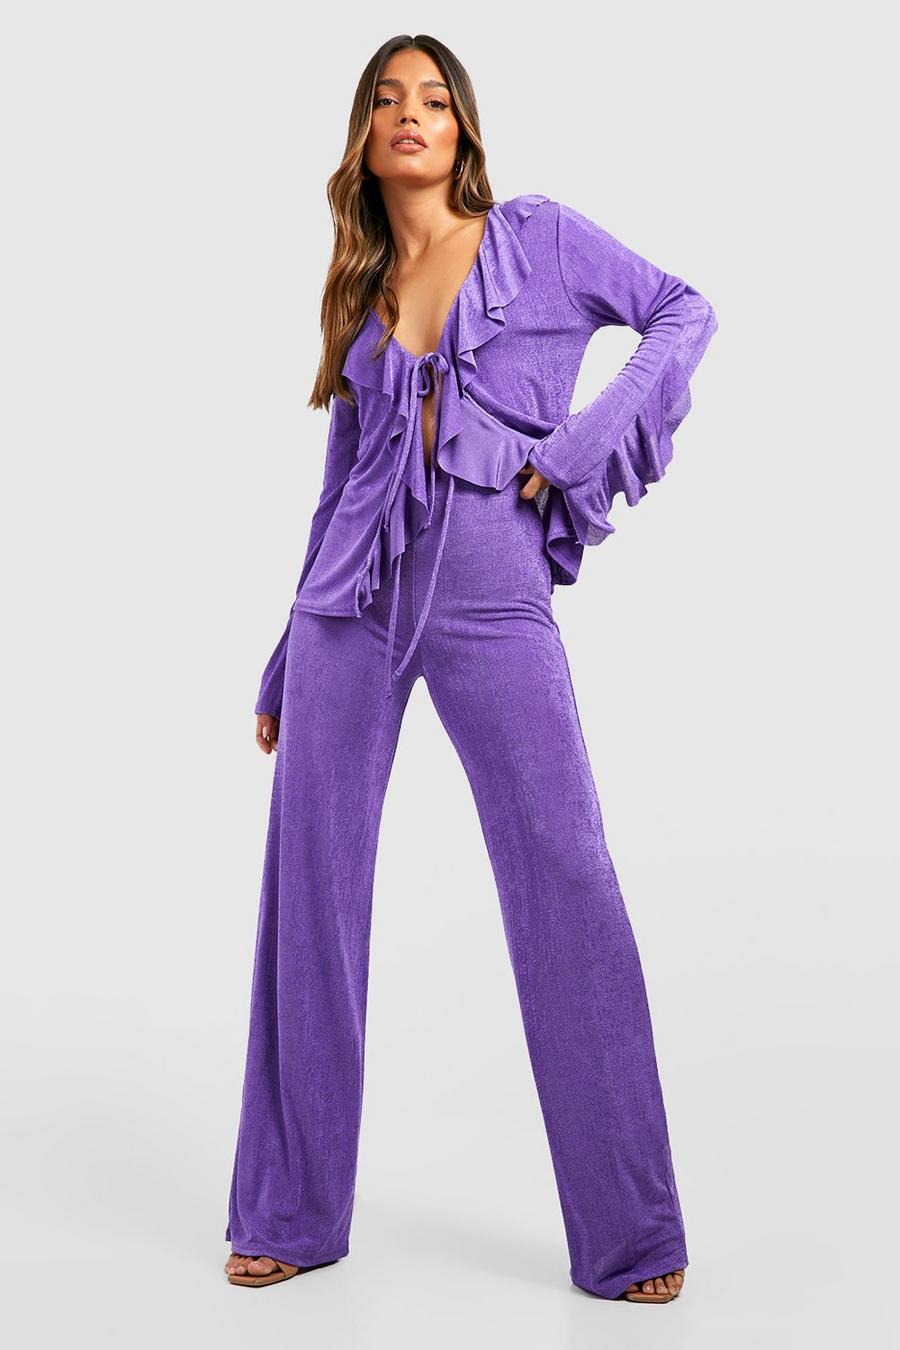 Jewel purple Textured Slinky Wide Leg Trousers